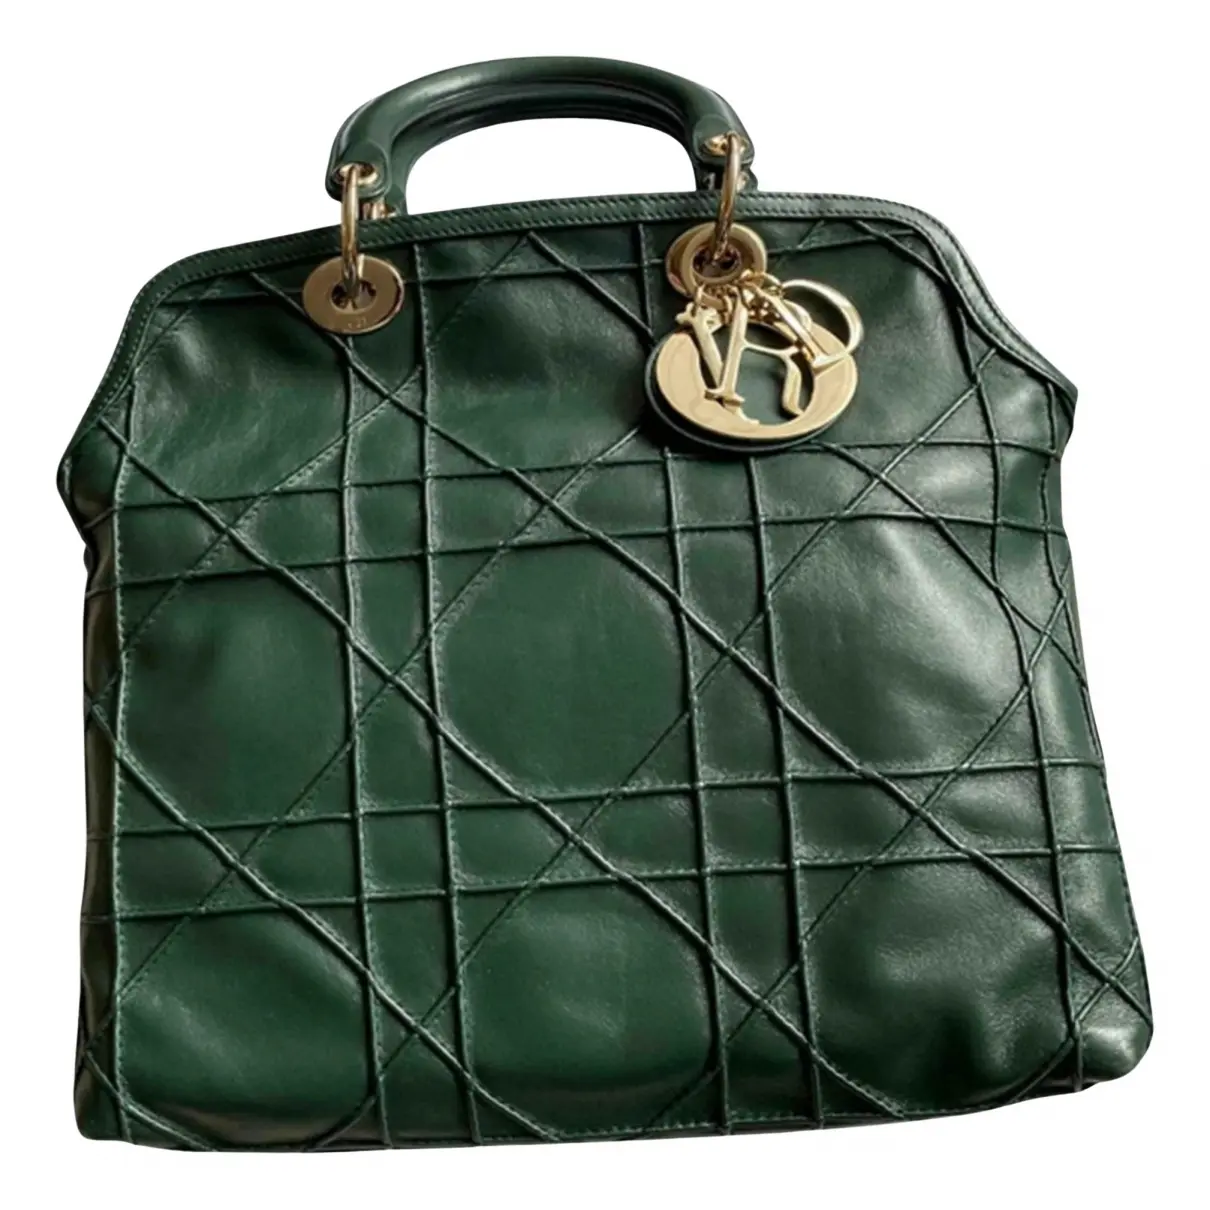 Granville leather bag Dior